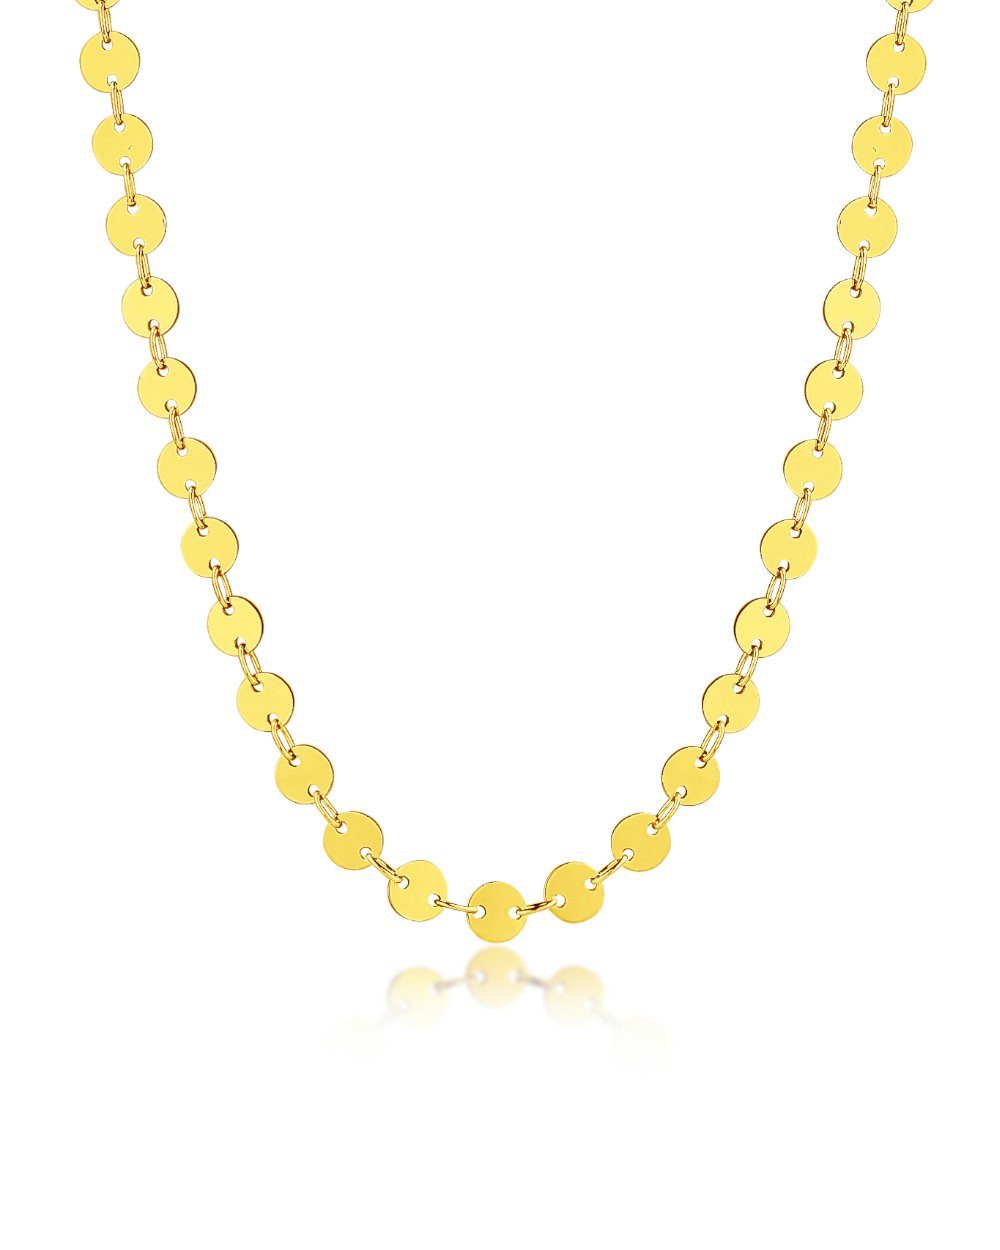 DANIEL CLIFFORD Choker 'Cora' Damen Halskette aus Silber 925 und 18 Karat Gelbgold vergoldet mit Plättchen, enganliegende Halskette für Frauen (inkl. Verpackung), größenverstellbar 31cm - 36cm, haut- und allergiefreundlich